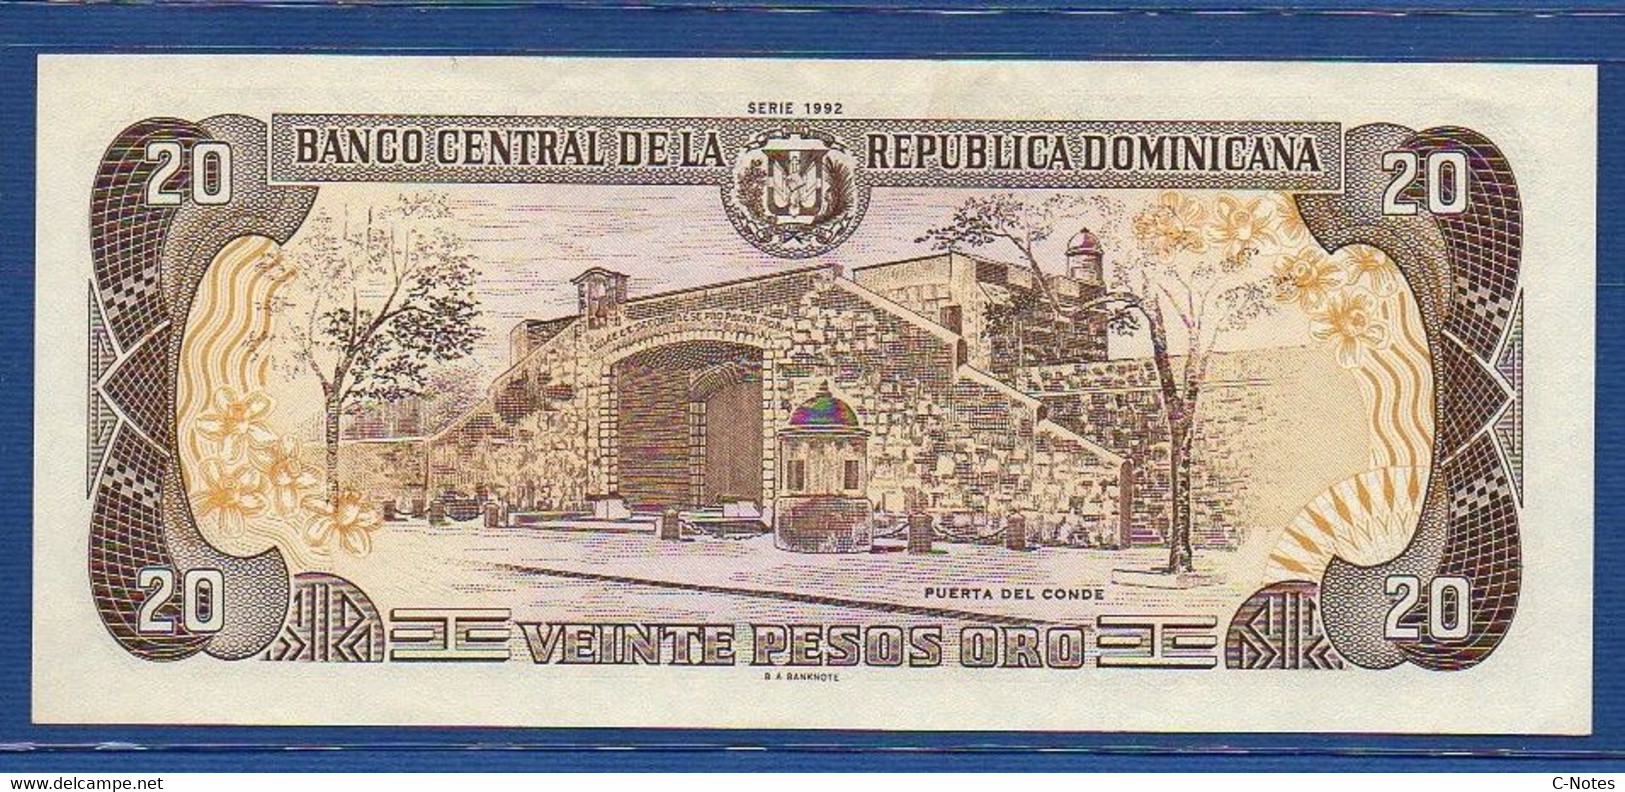 DOMINICAN REPUBLIC - P.139 – 20 Pesos Oro 1992 AUNC, Serie F 956156 J Commemorative Issue - Dominikanische Rep.